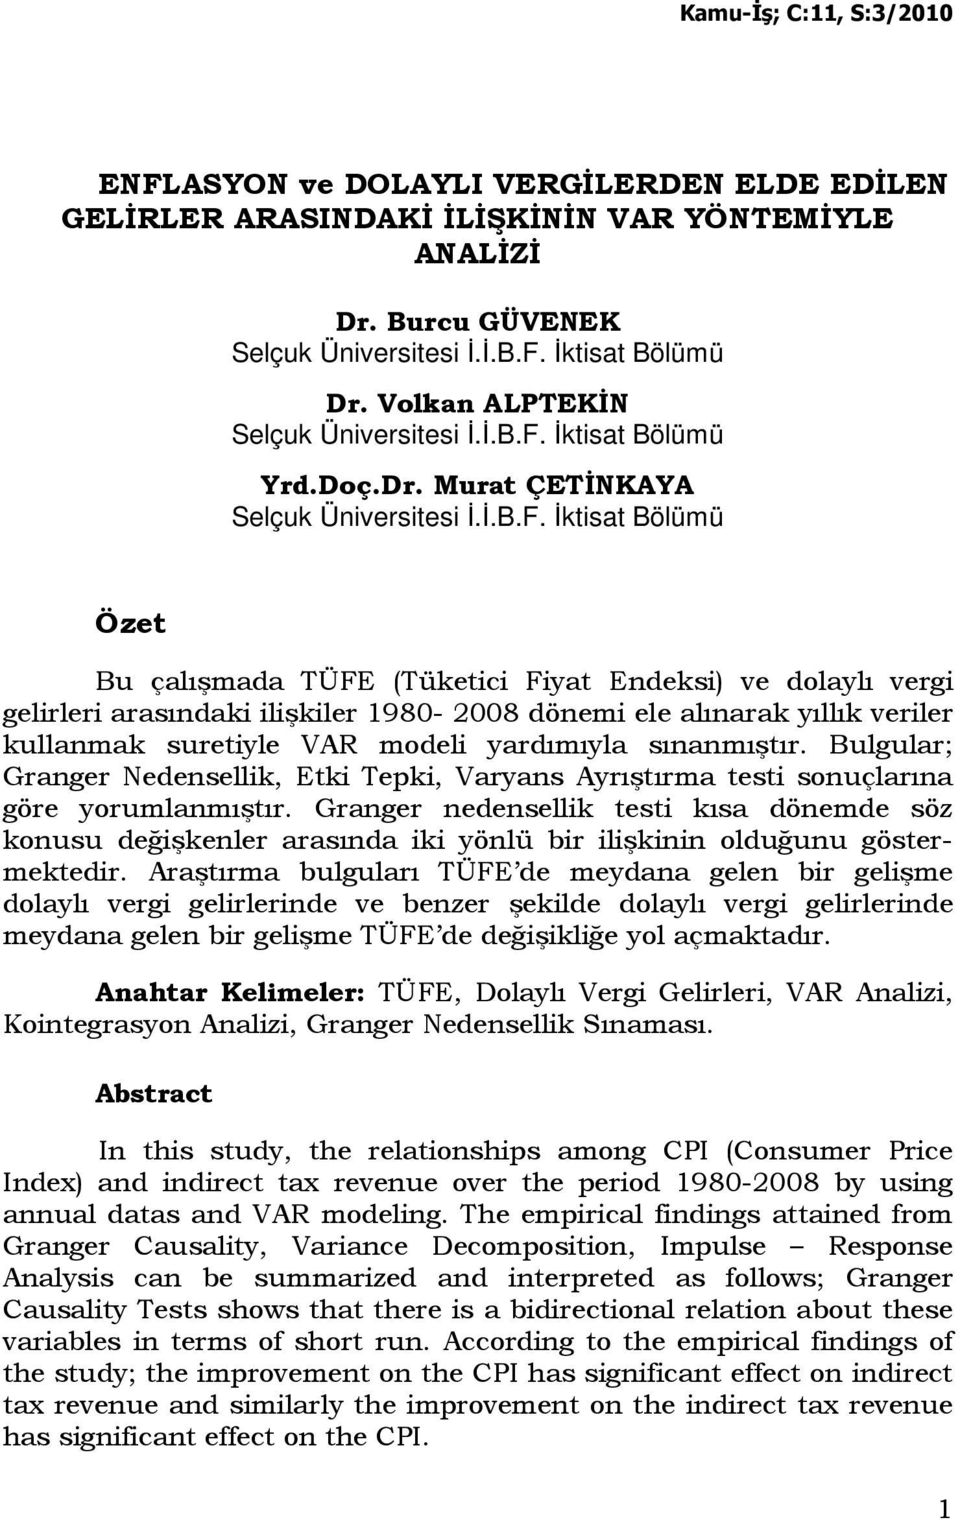 Đkisa Bölümü Öze Bu çalışmada TÜFE (Tükeici Fiya Endeksi) ve dolaylı vergi gelirleri arasındaki ilişkiler 1980-2008 dönemi ele alınarak yıllık veriler kullanmak sureiyle VAR modeli yardımıyla